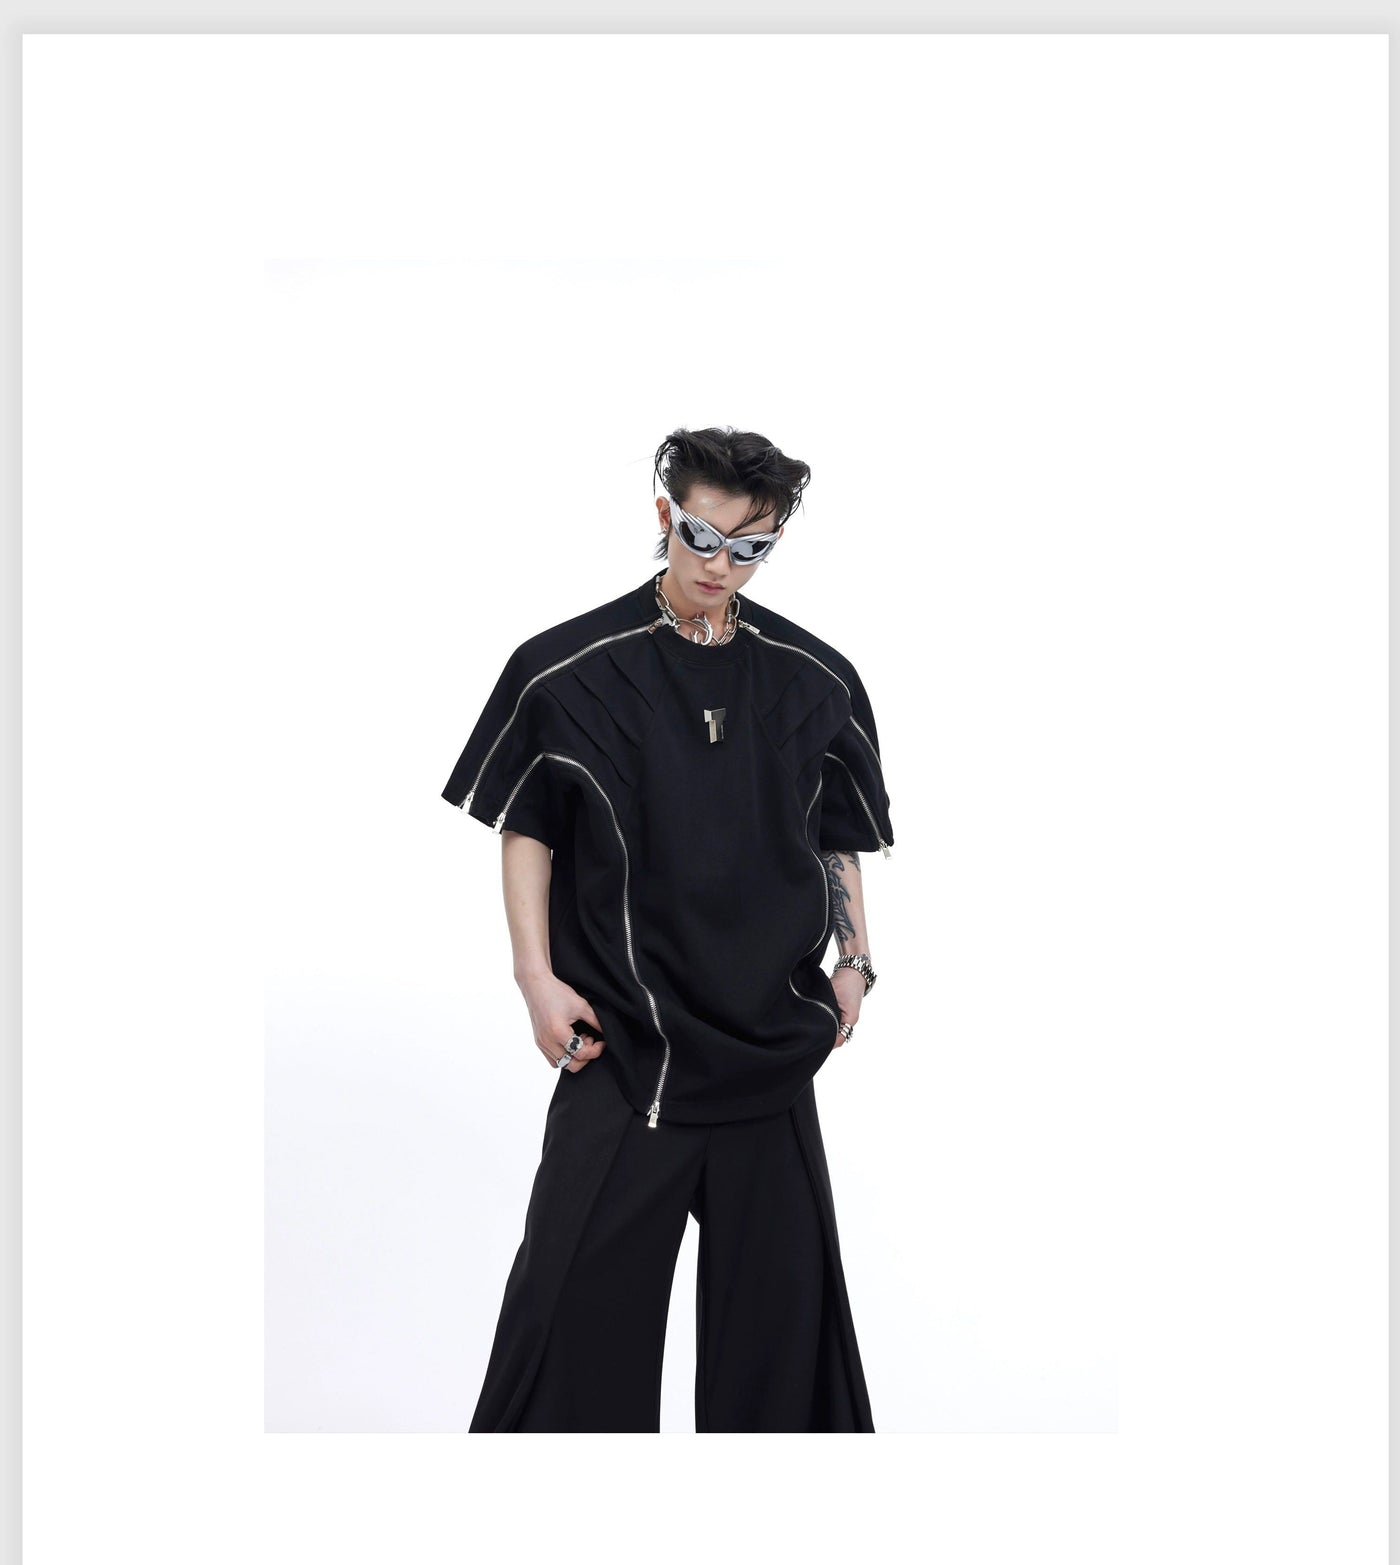 Zipper & Line Details T-Shirt Korean Street Fashion T-Shirt By Argue Culture Shop Online at OH Vault